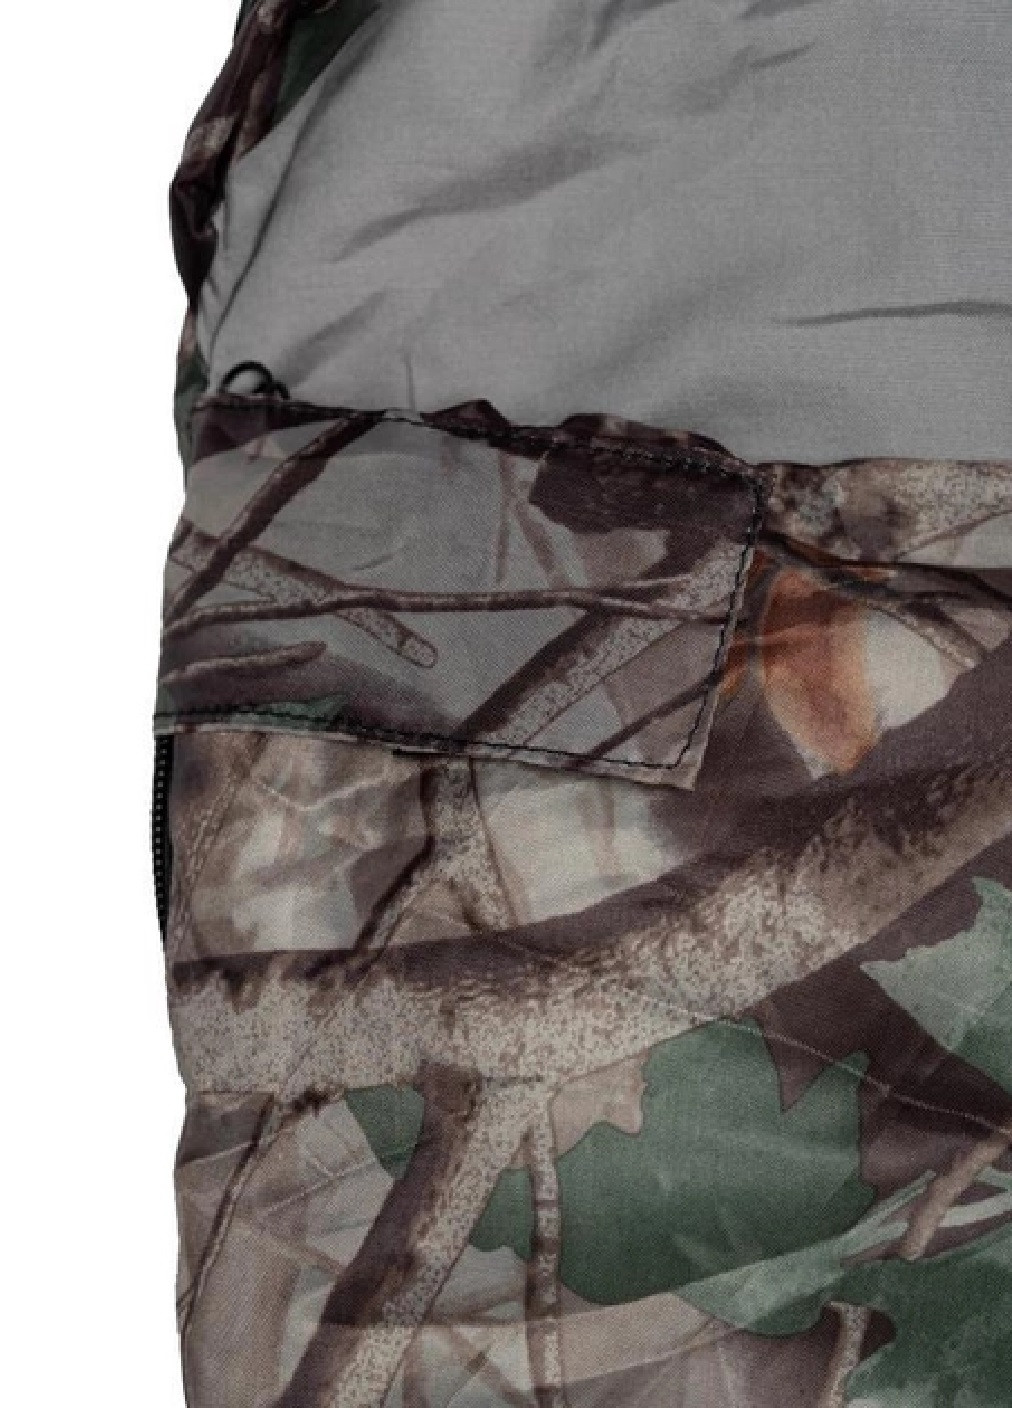 Спальный мешок кокон-одеяло плед туристический походный для кемпинга отдыха на природе 220х75 см (475442-Prob) Камуфляж Unbranded (267493604)